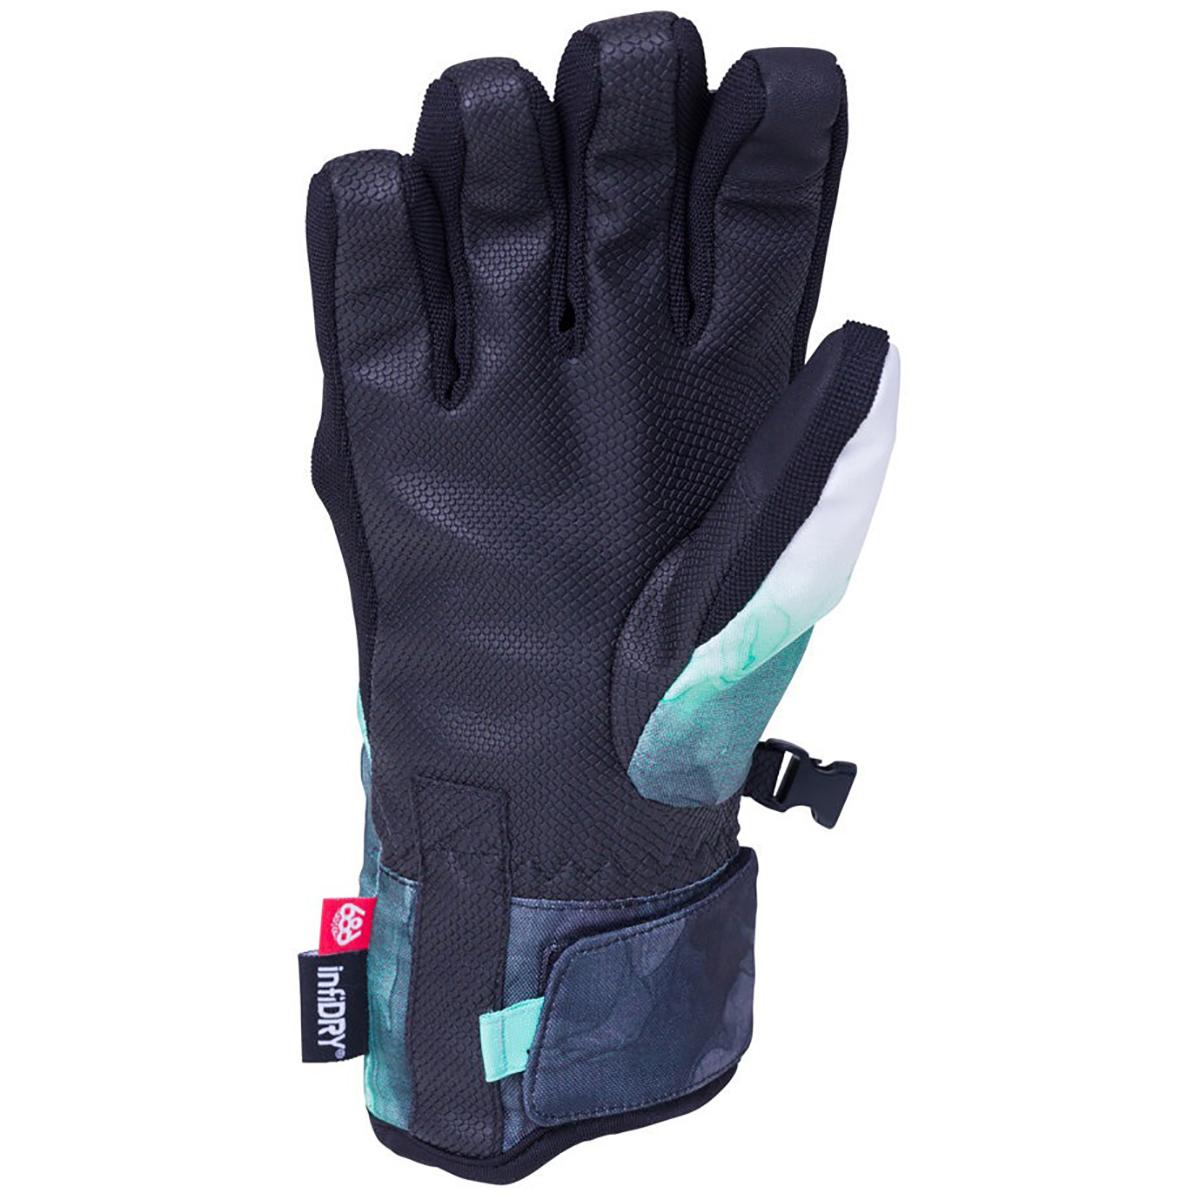 686 Revel Gloves - Women's